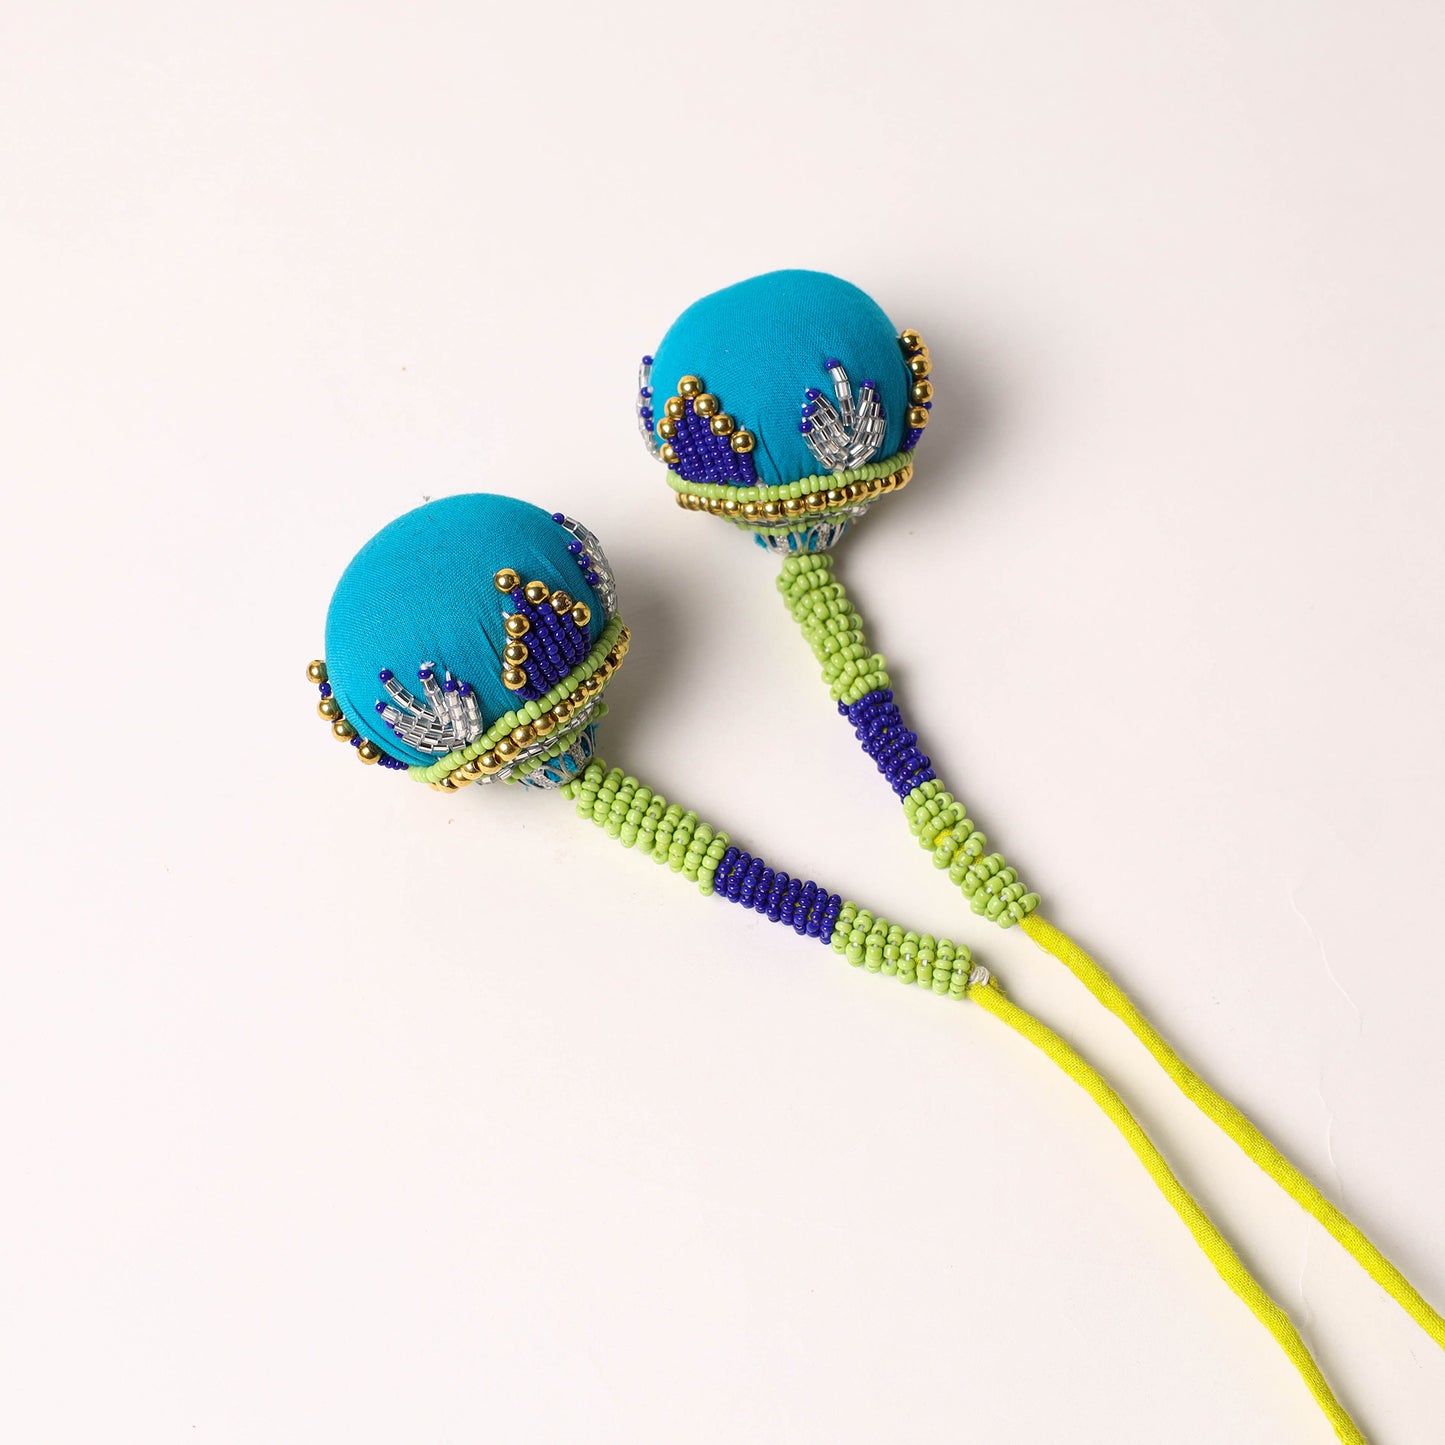 Handmade Beadwork Latkan /Tassels for Clothing